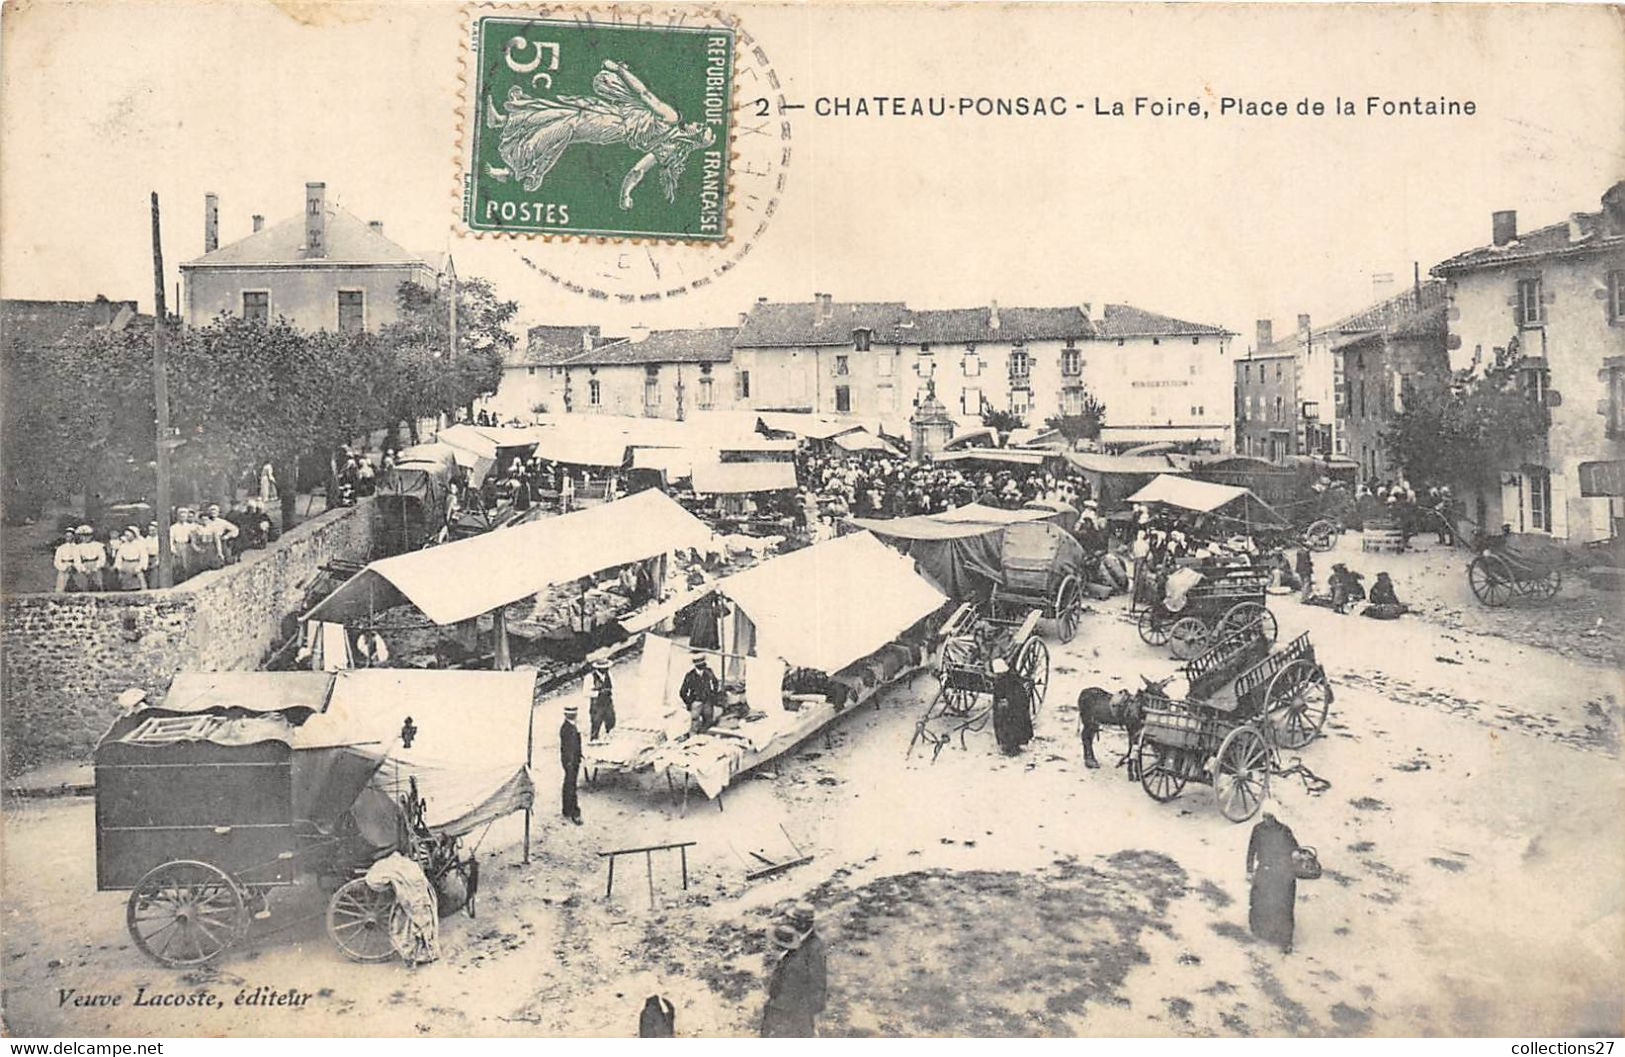 87-CHATEAU-PONSAC- LA FOIRE PLACE DE LA FONTAINE - Chateauponsac